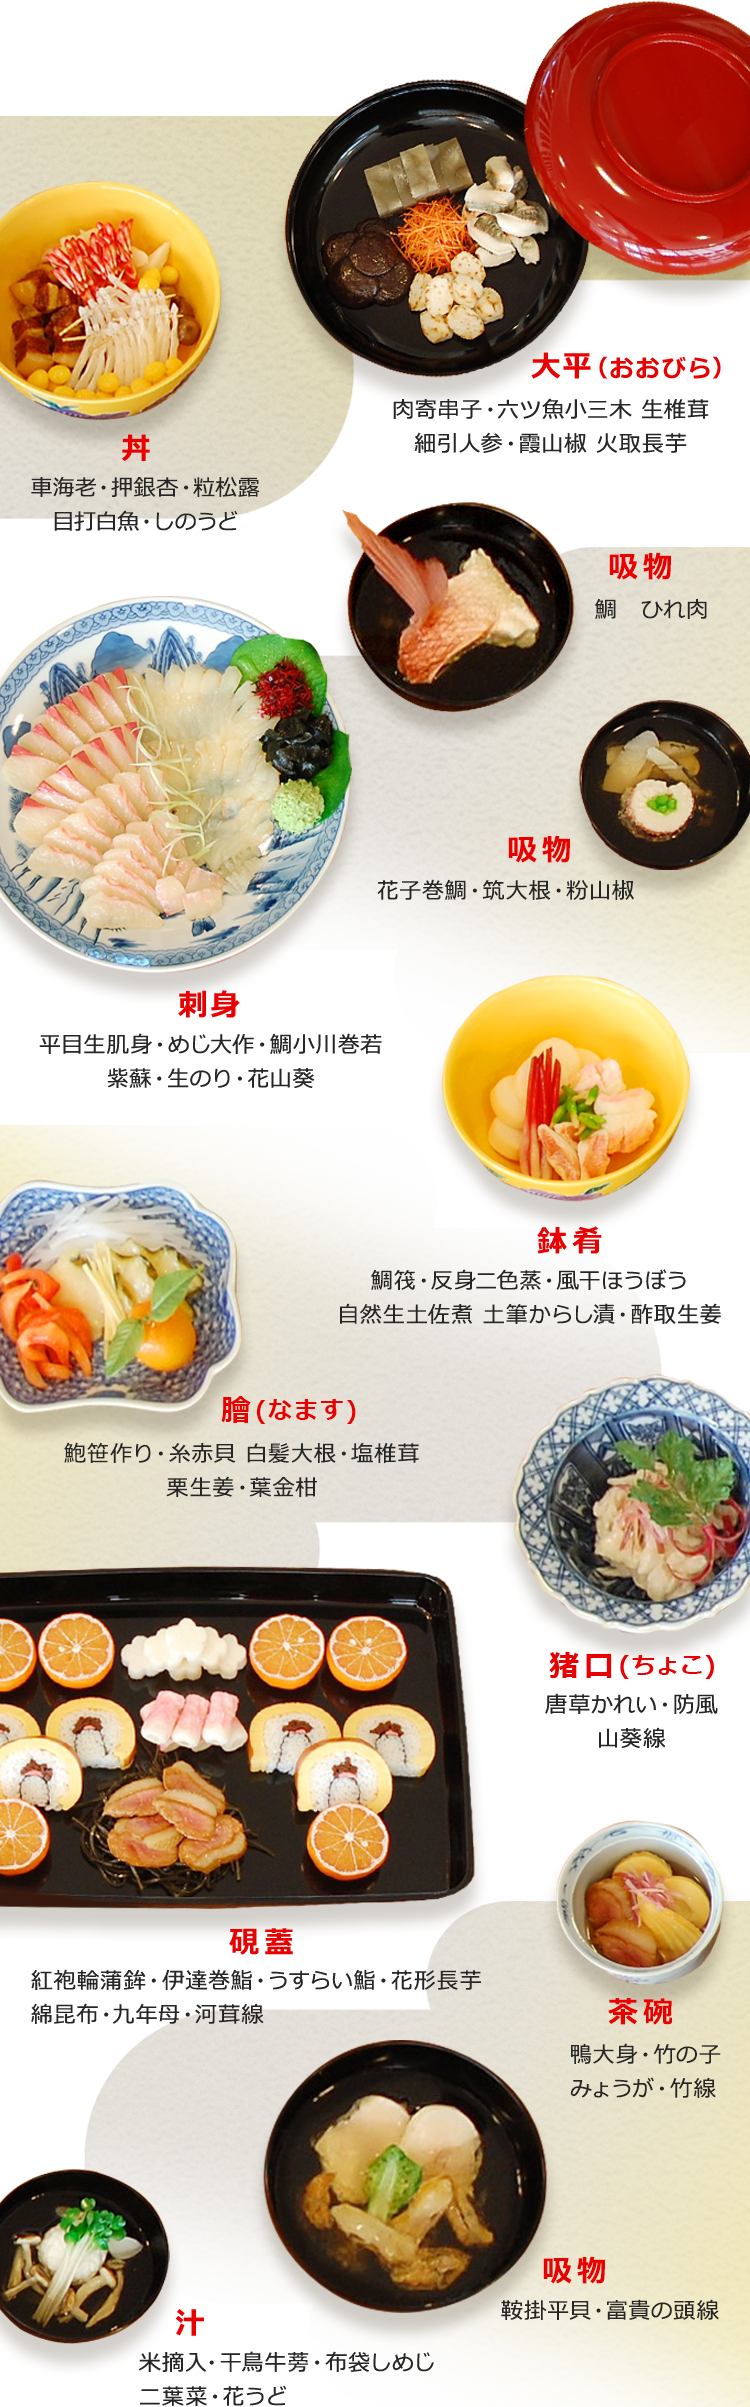 洋食のルーツ 西洋料理の事始め | 洋食ルーツストーリー | Plenus 米食